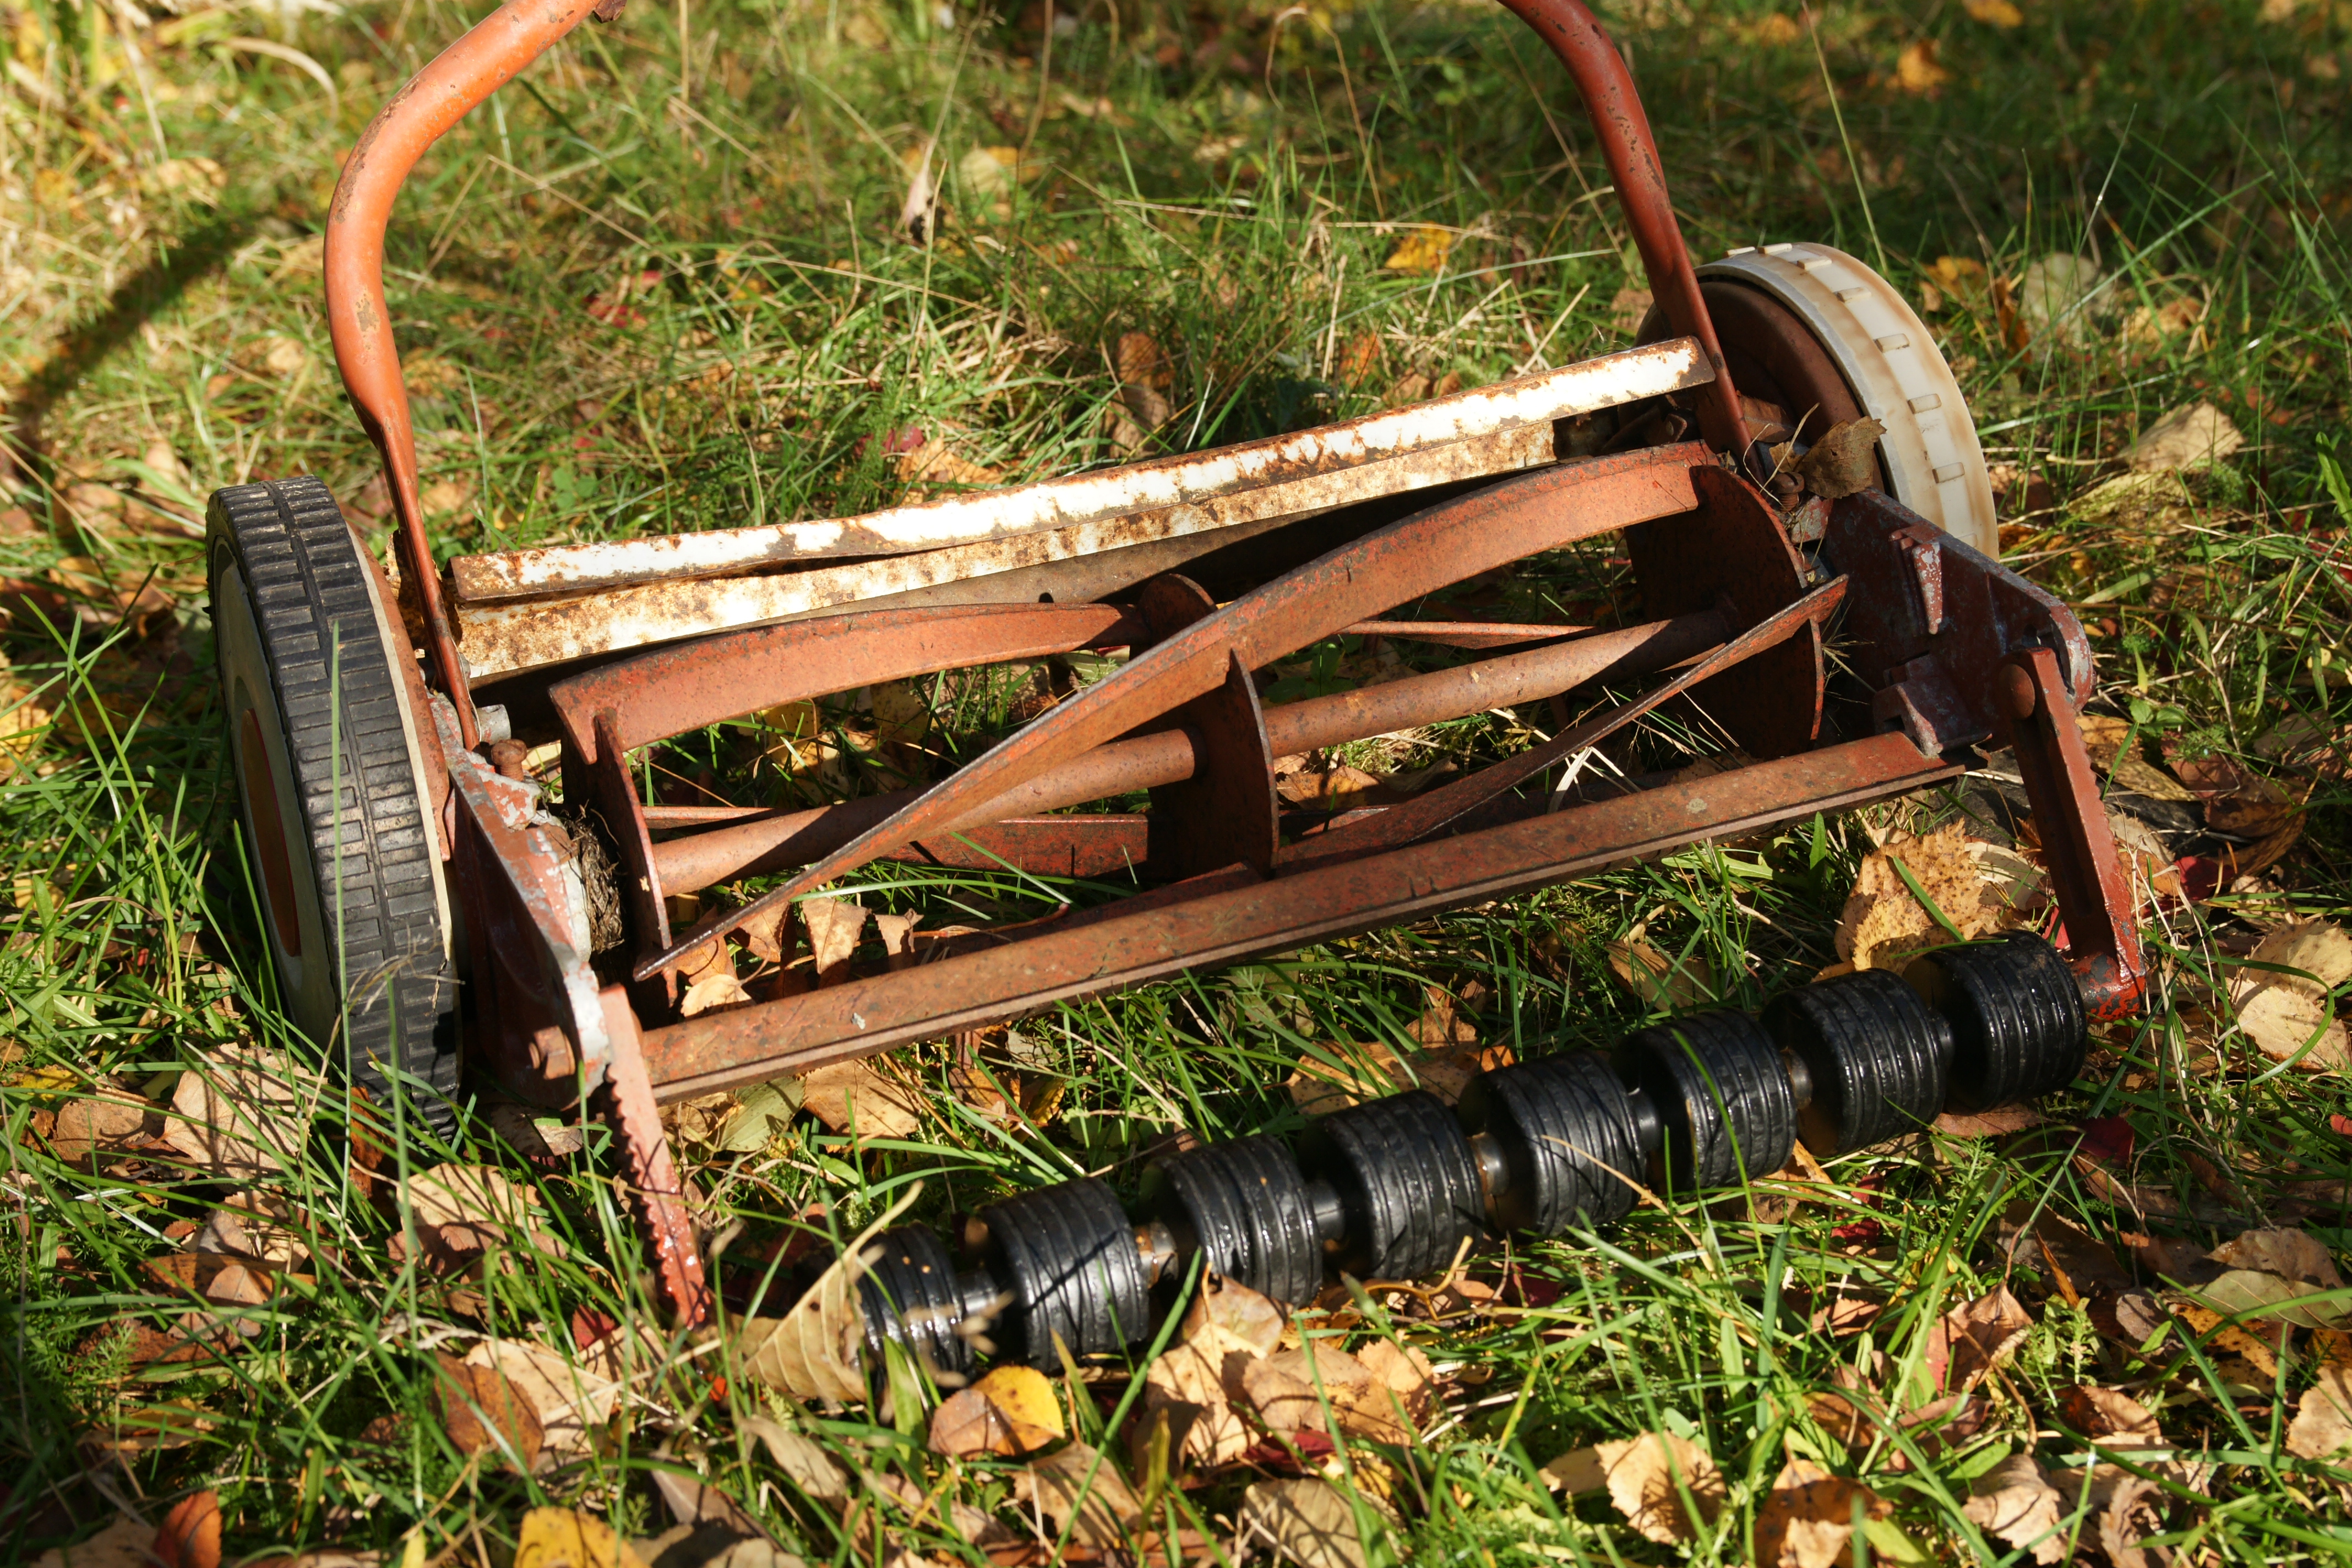 File:Rusted reel mower.JPG - Wikipedia